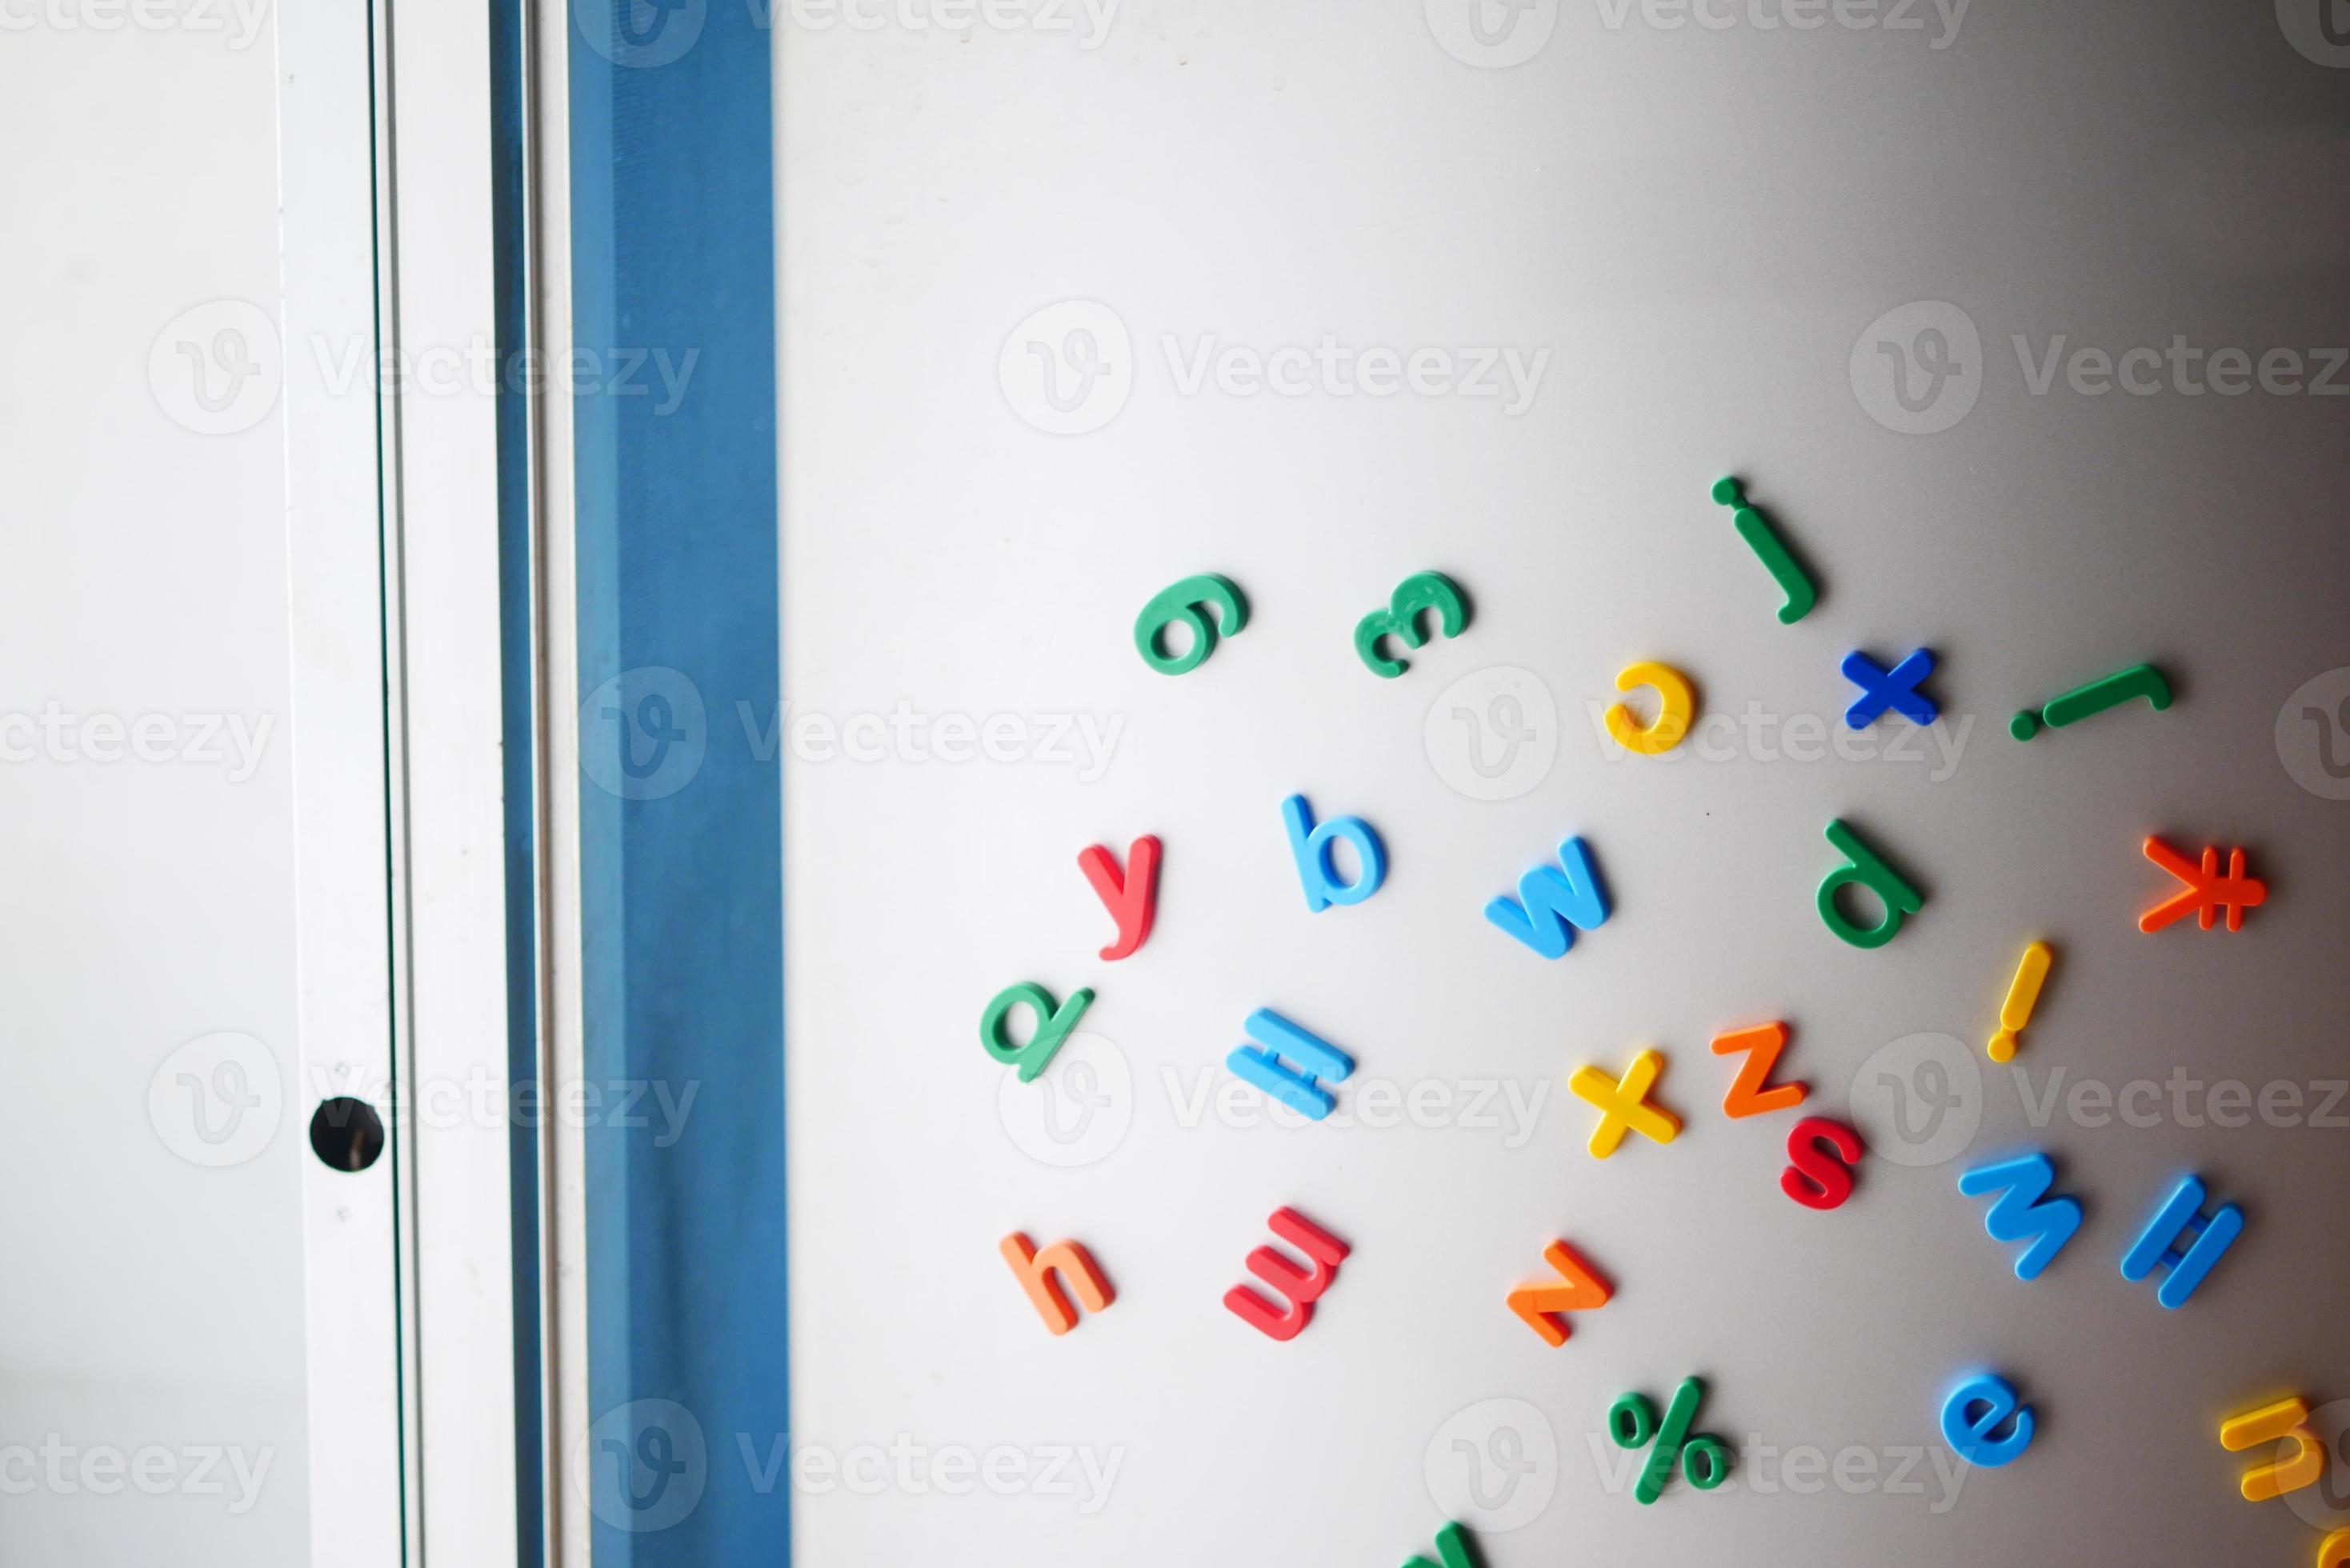 rand Besmettelijk Kunstmatig kleurrijke plastic letters op een koelkast 4949390 Stockfoto